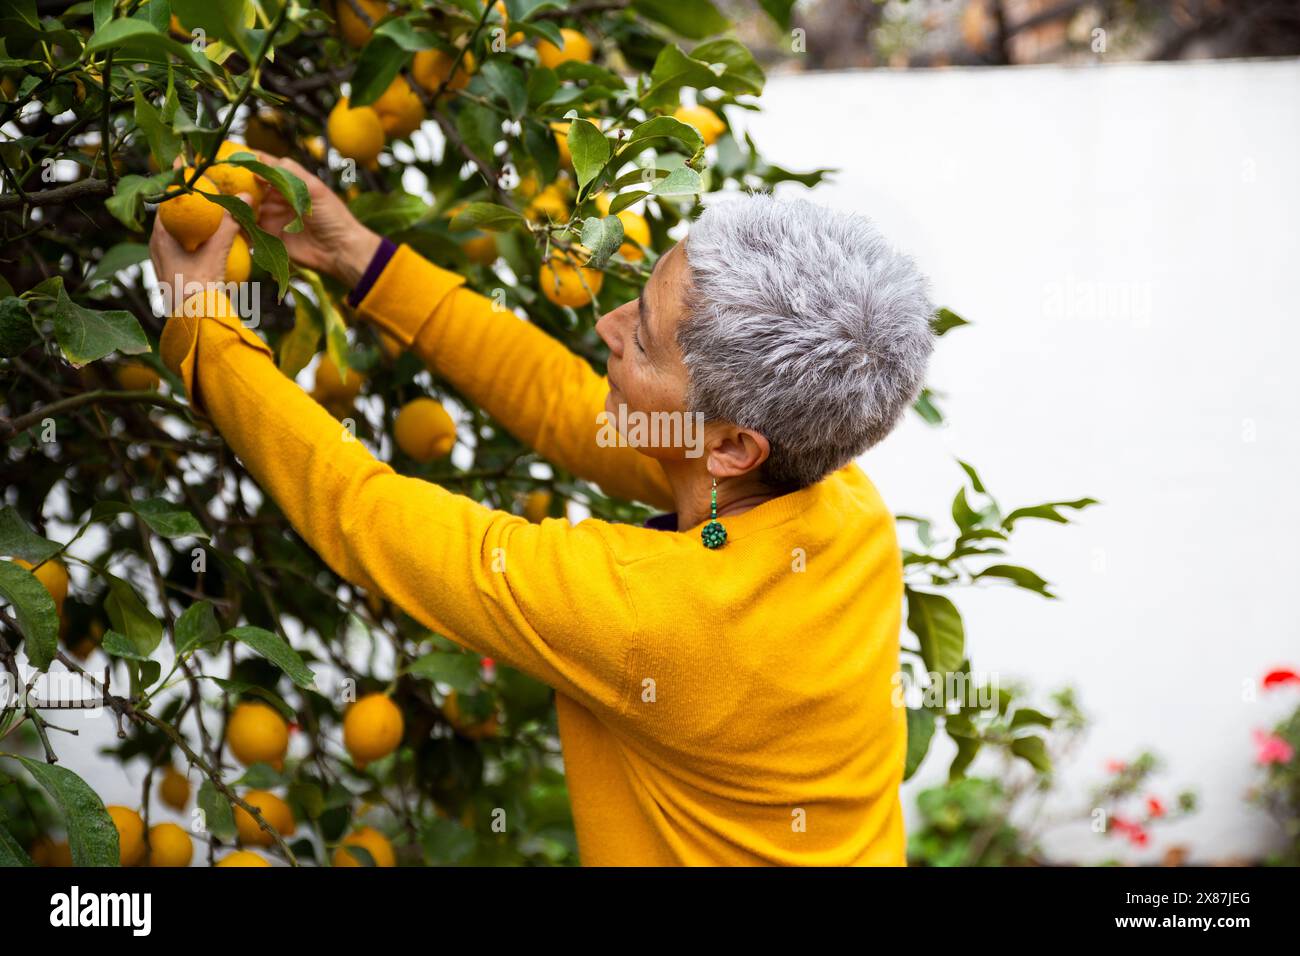 Frau, die Zitronen vom Baum im Garten pflückt Stockfoto